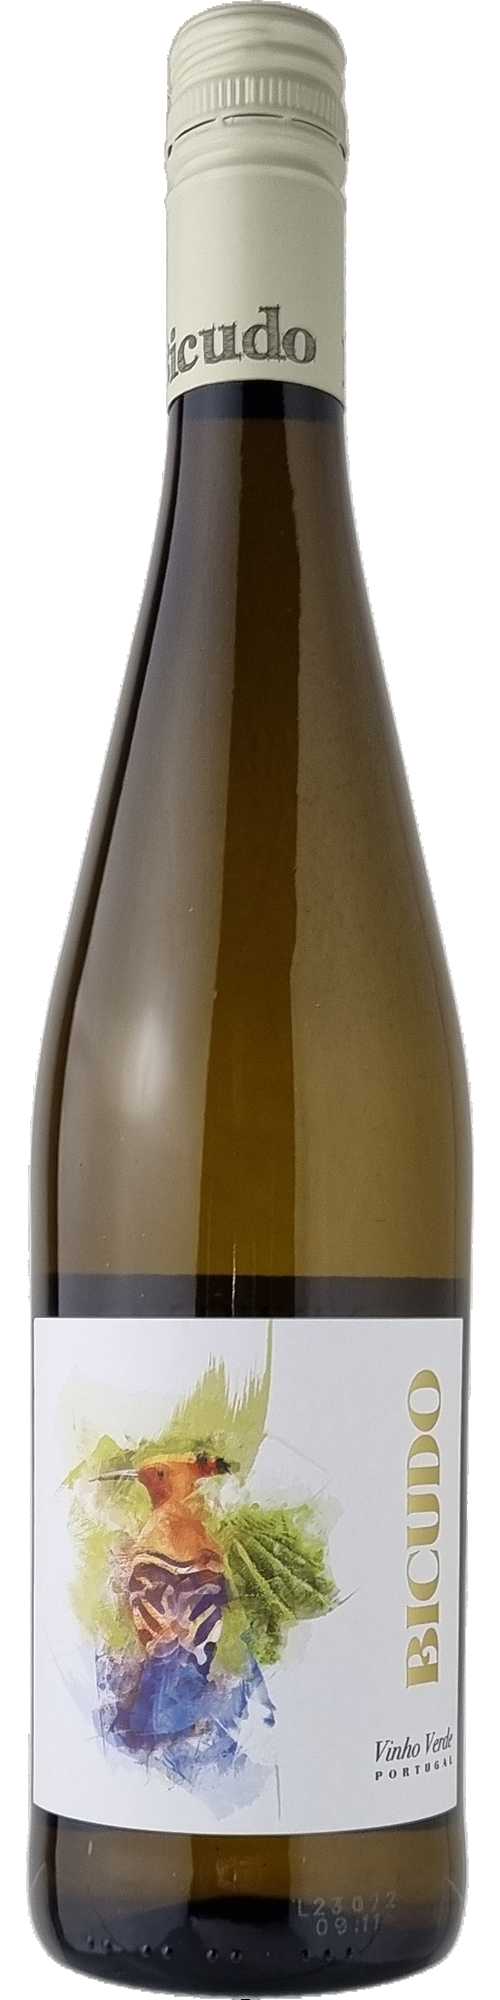 Bicudo Vinho Verde Branco DOC Weißwein trocken